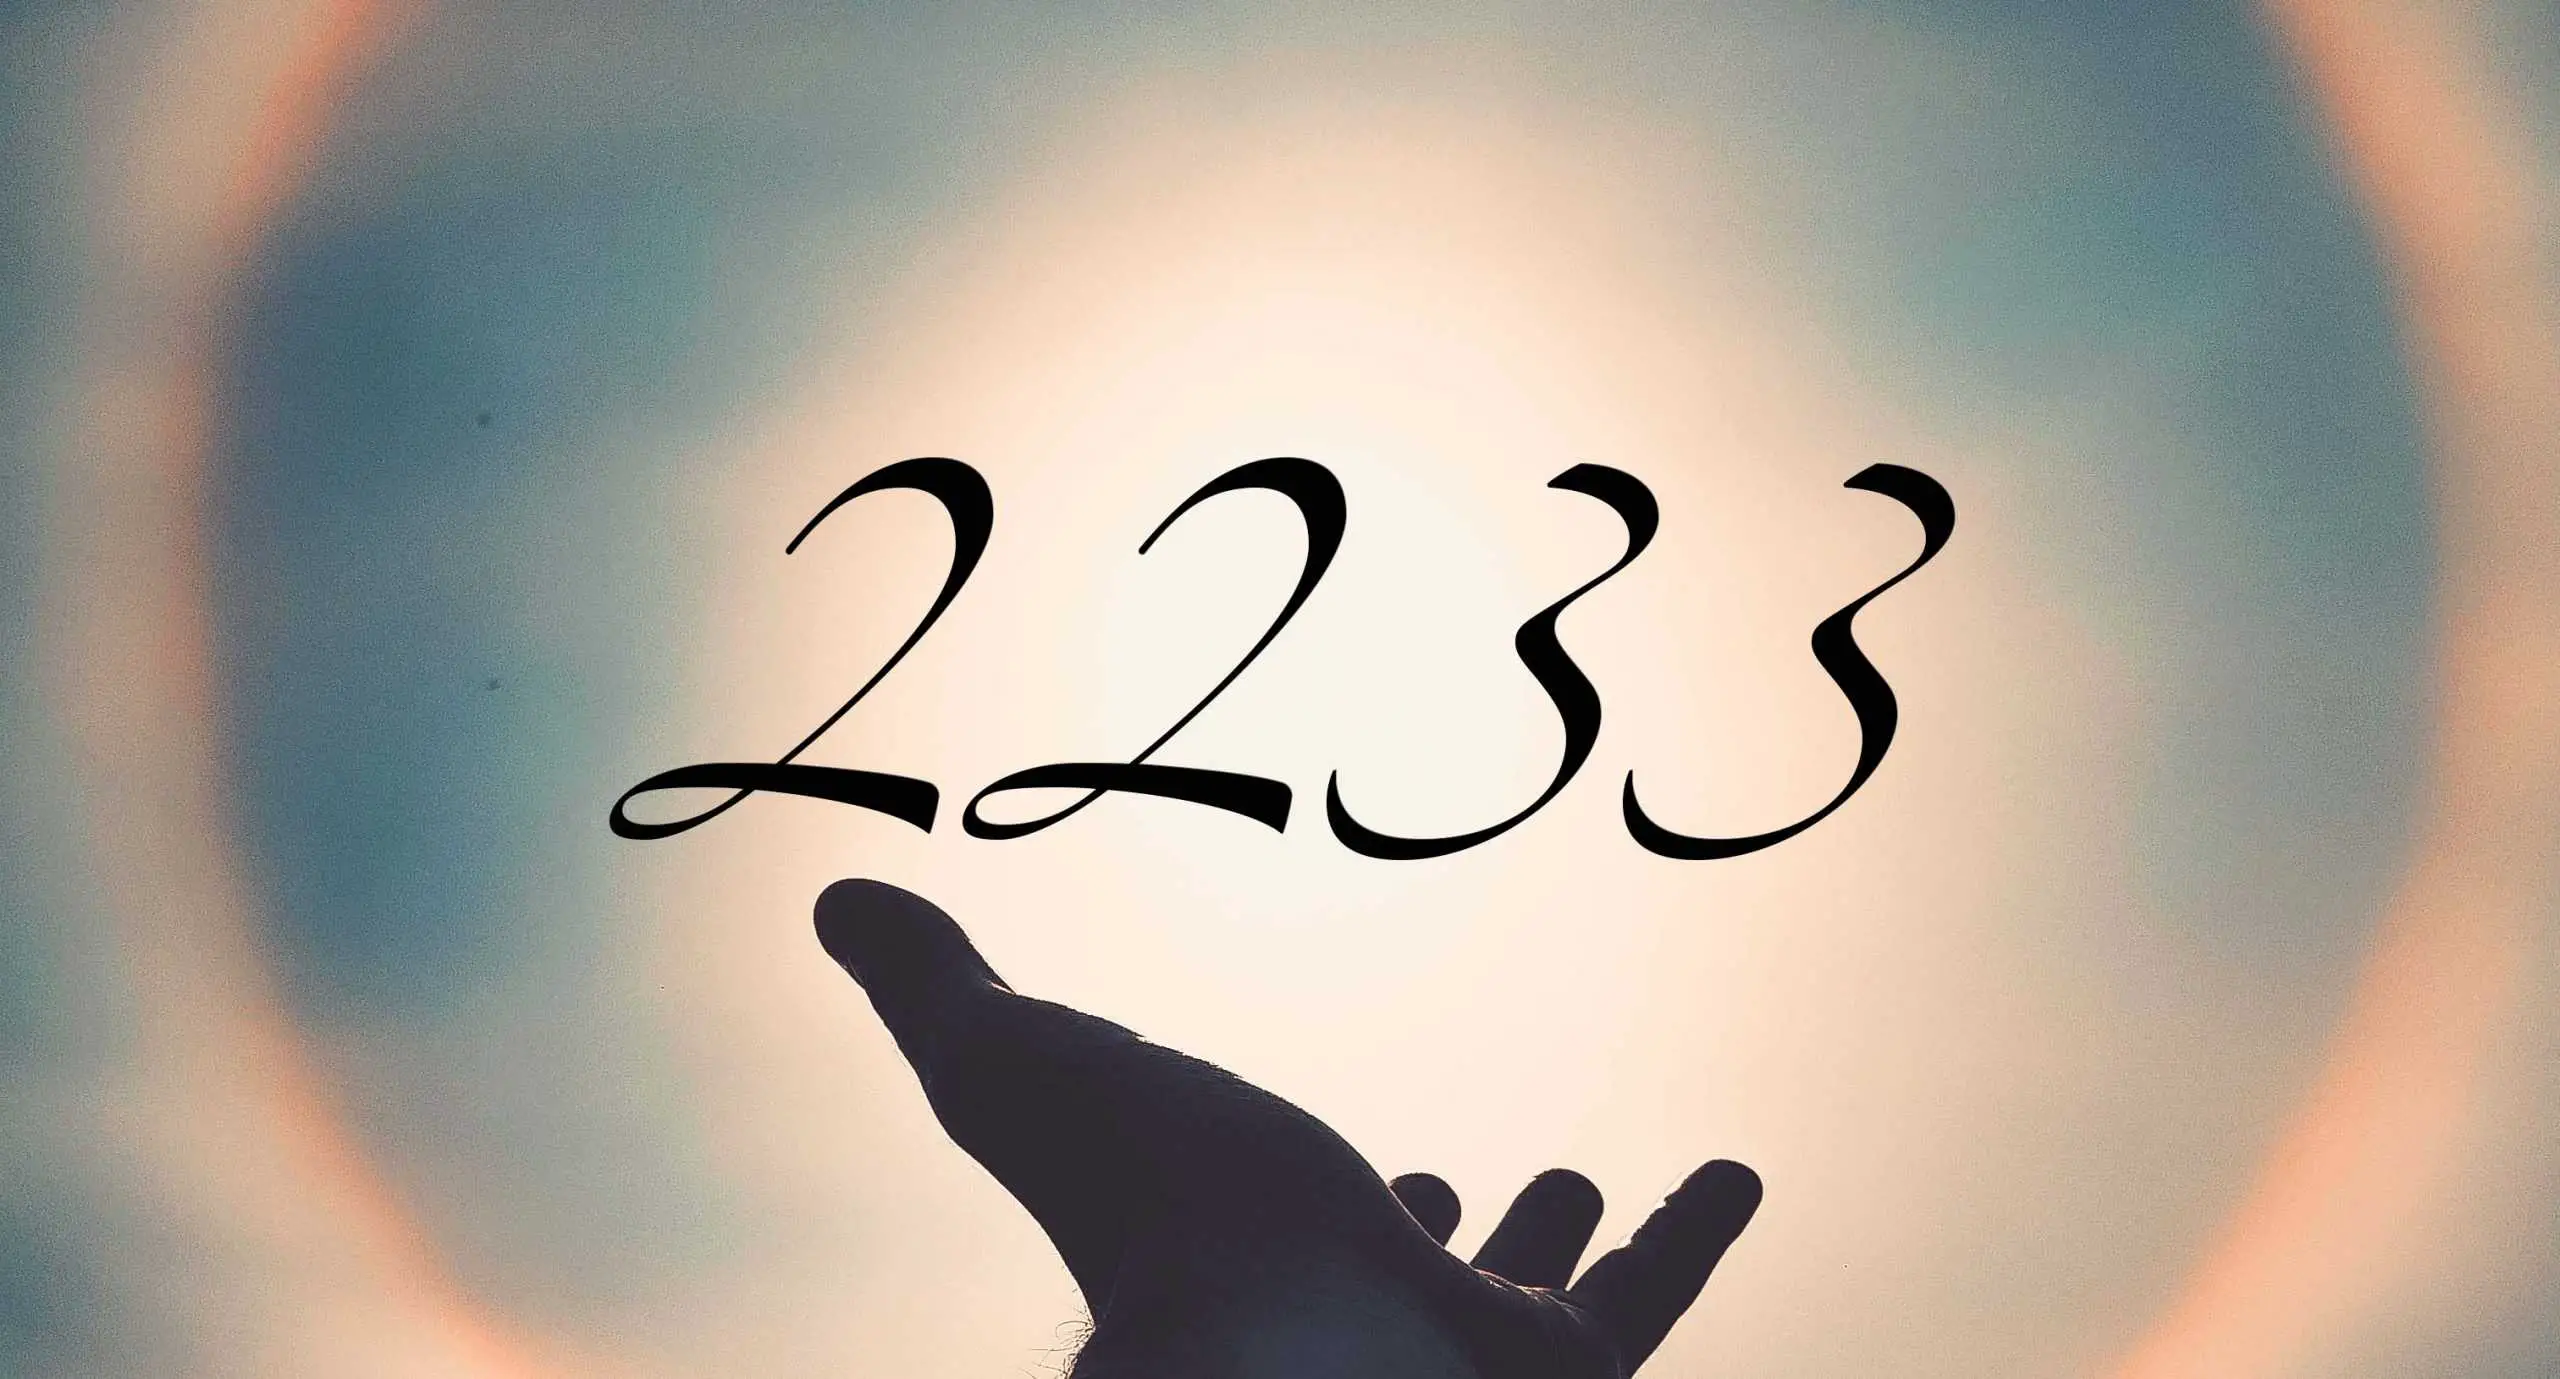 Signification du nombre 2233